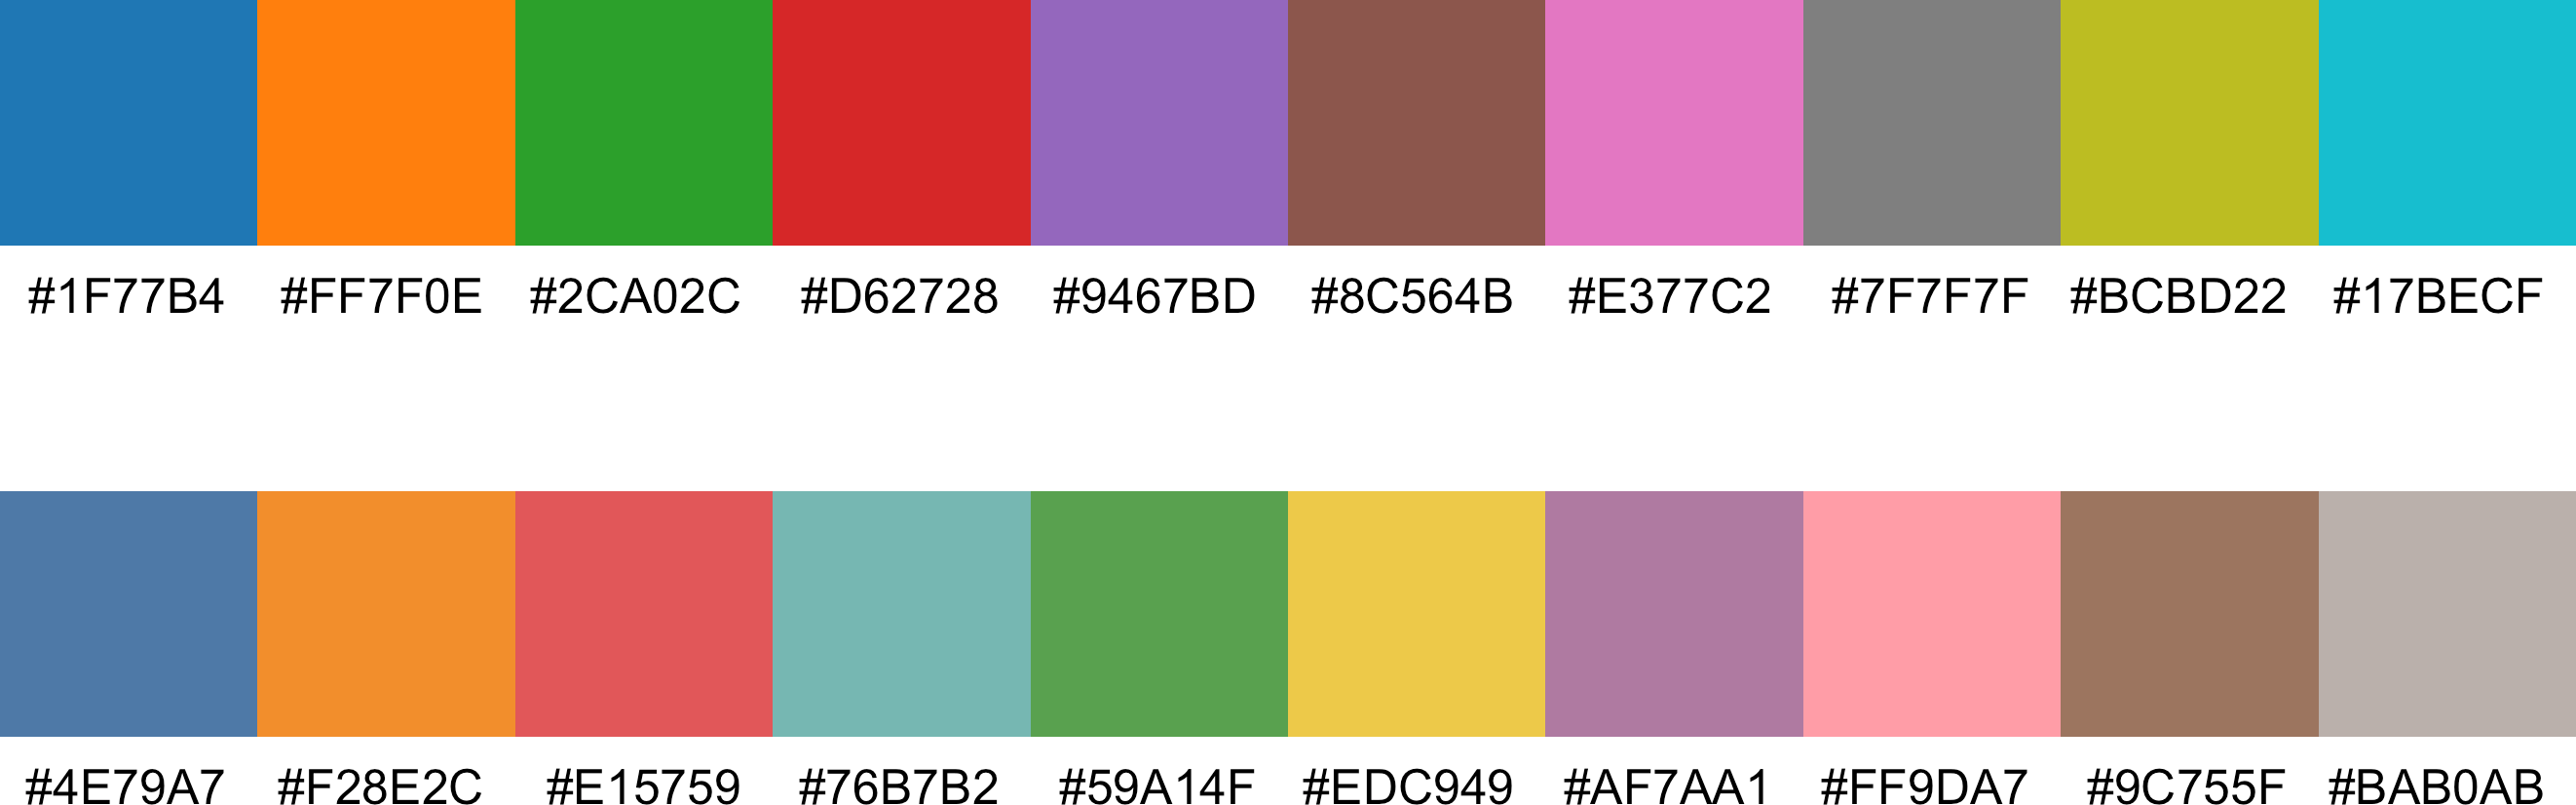 Default color palettes: old (top) vs. new (bottom).